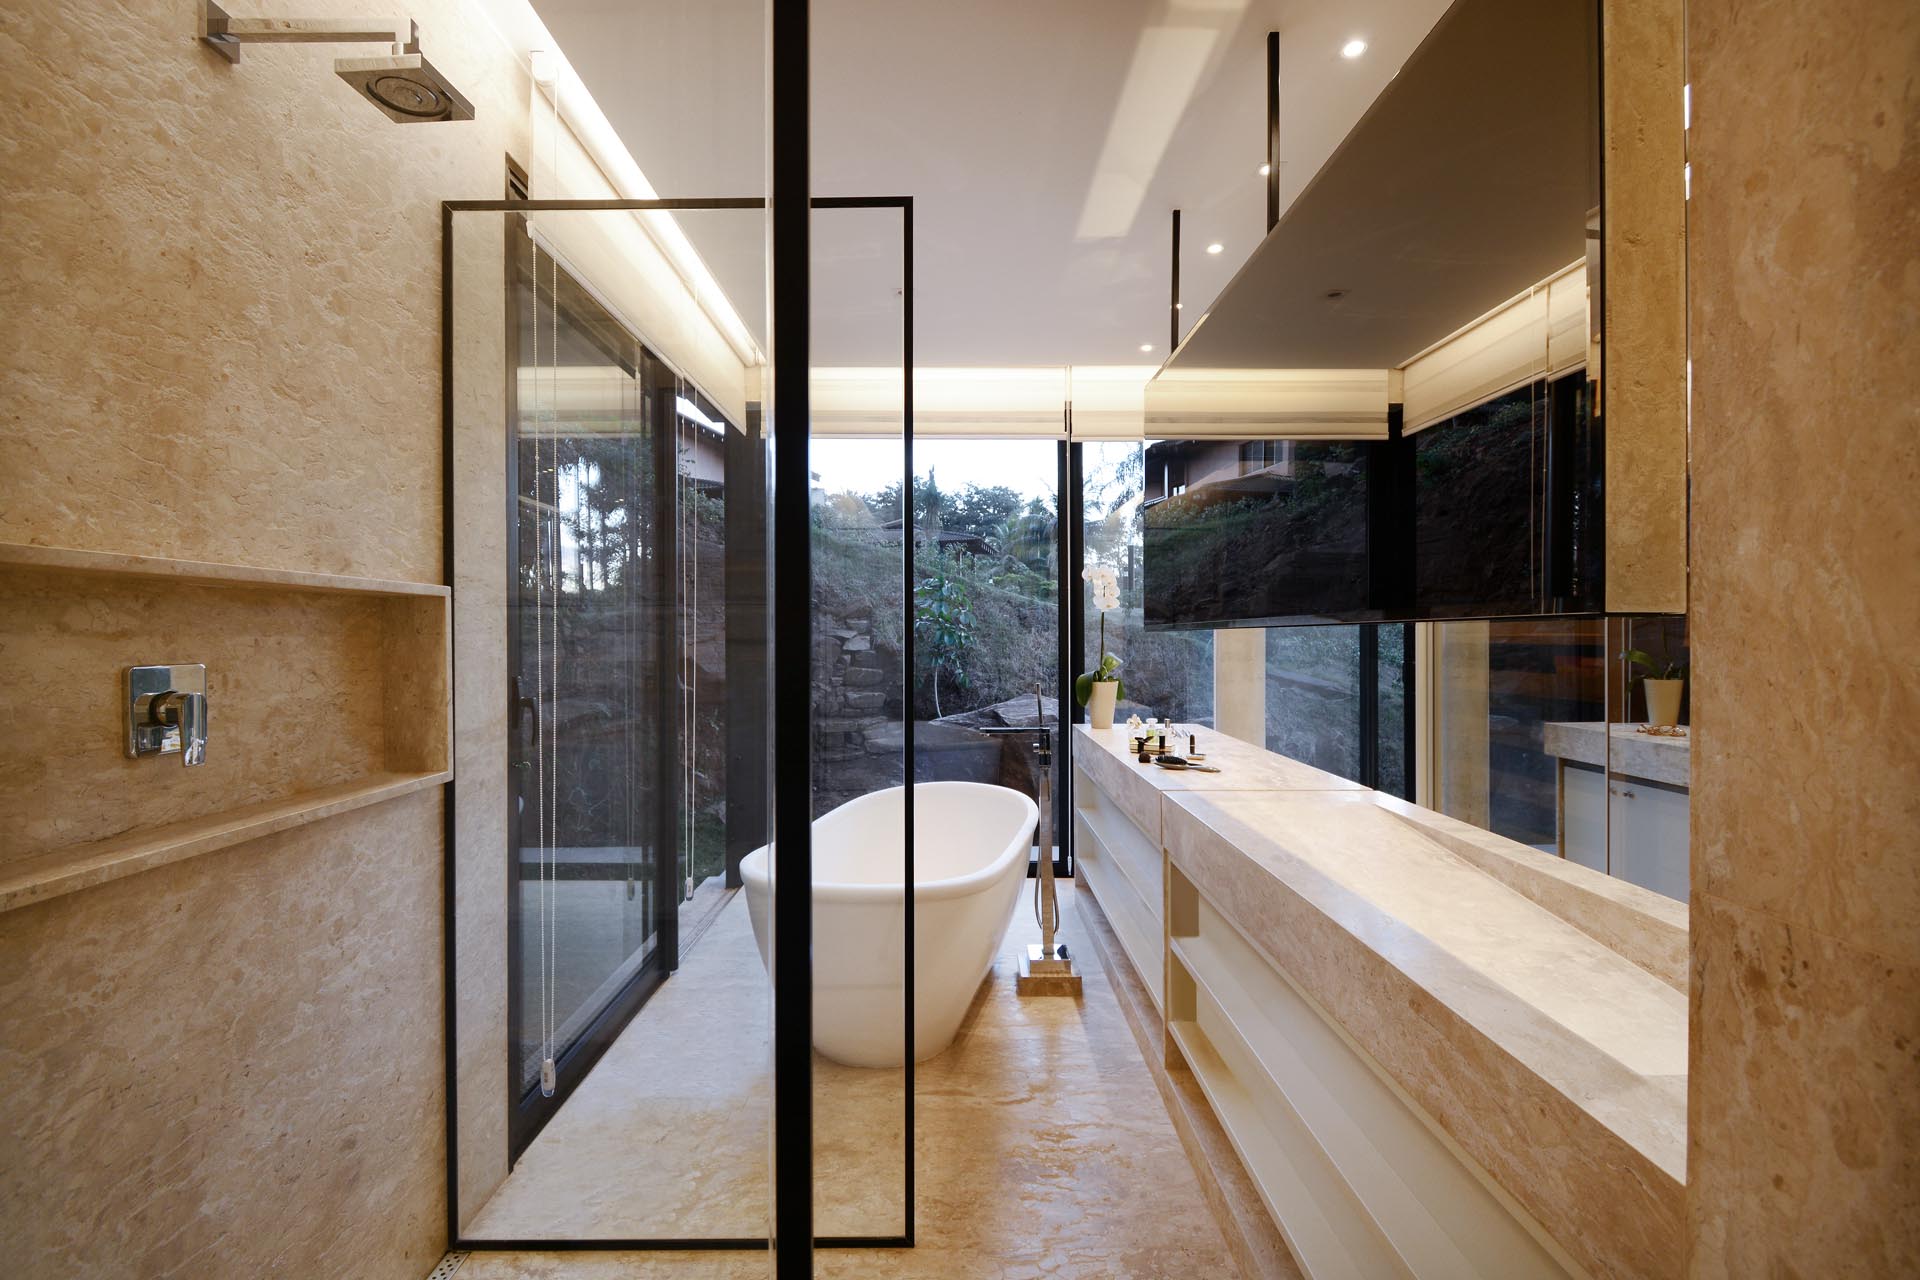 Современная ванная комната с окнами от пола до потолка, из которых открывается вид на деревья из отдельно стоящей ванны.